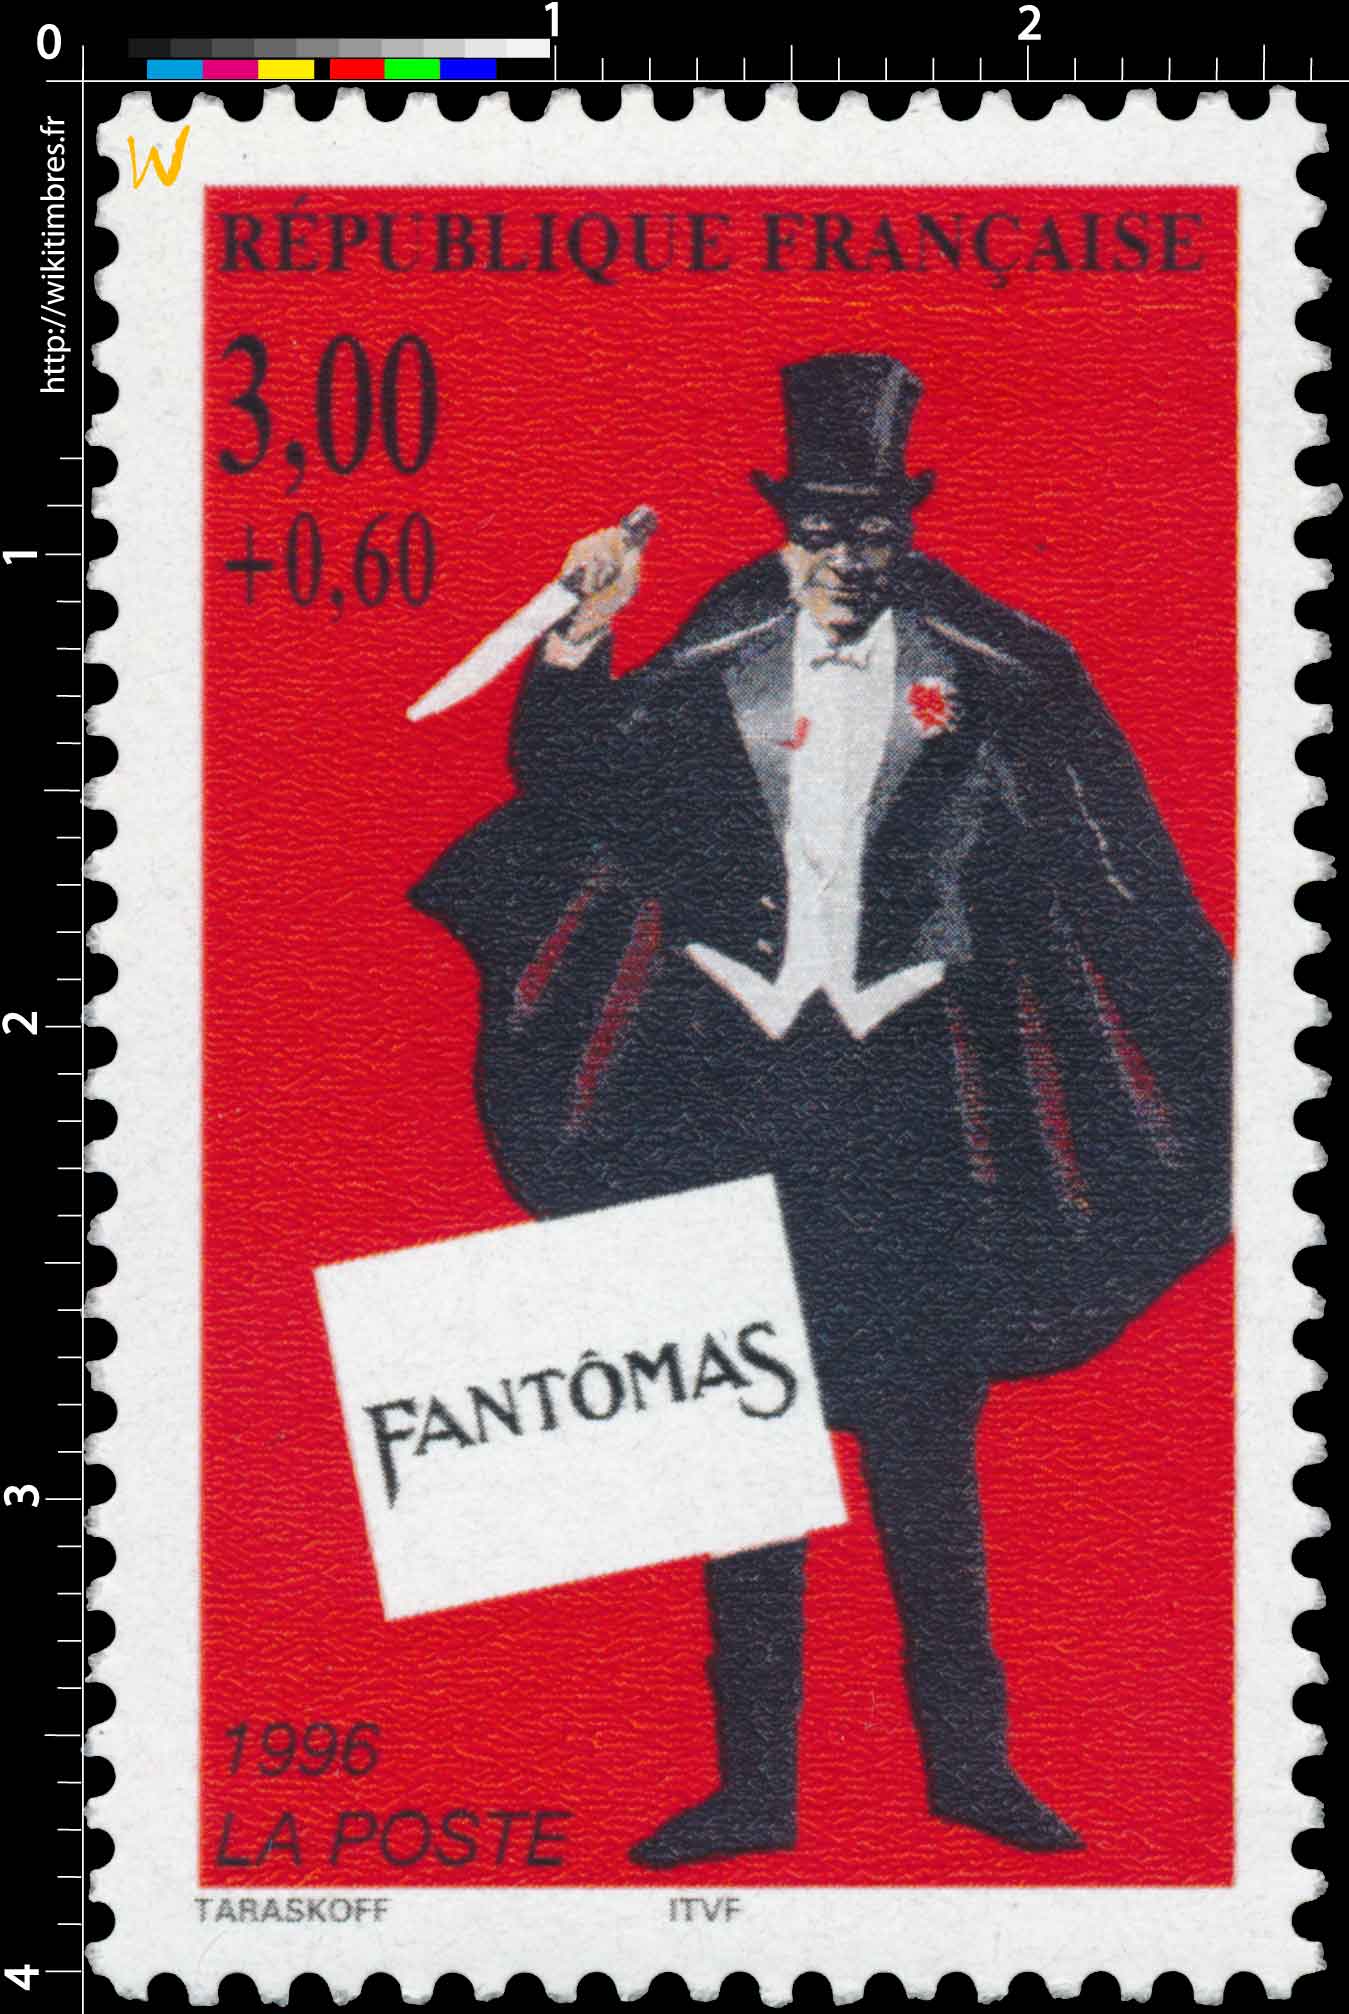 1996 FANTÔMAS